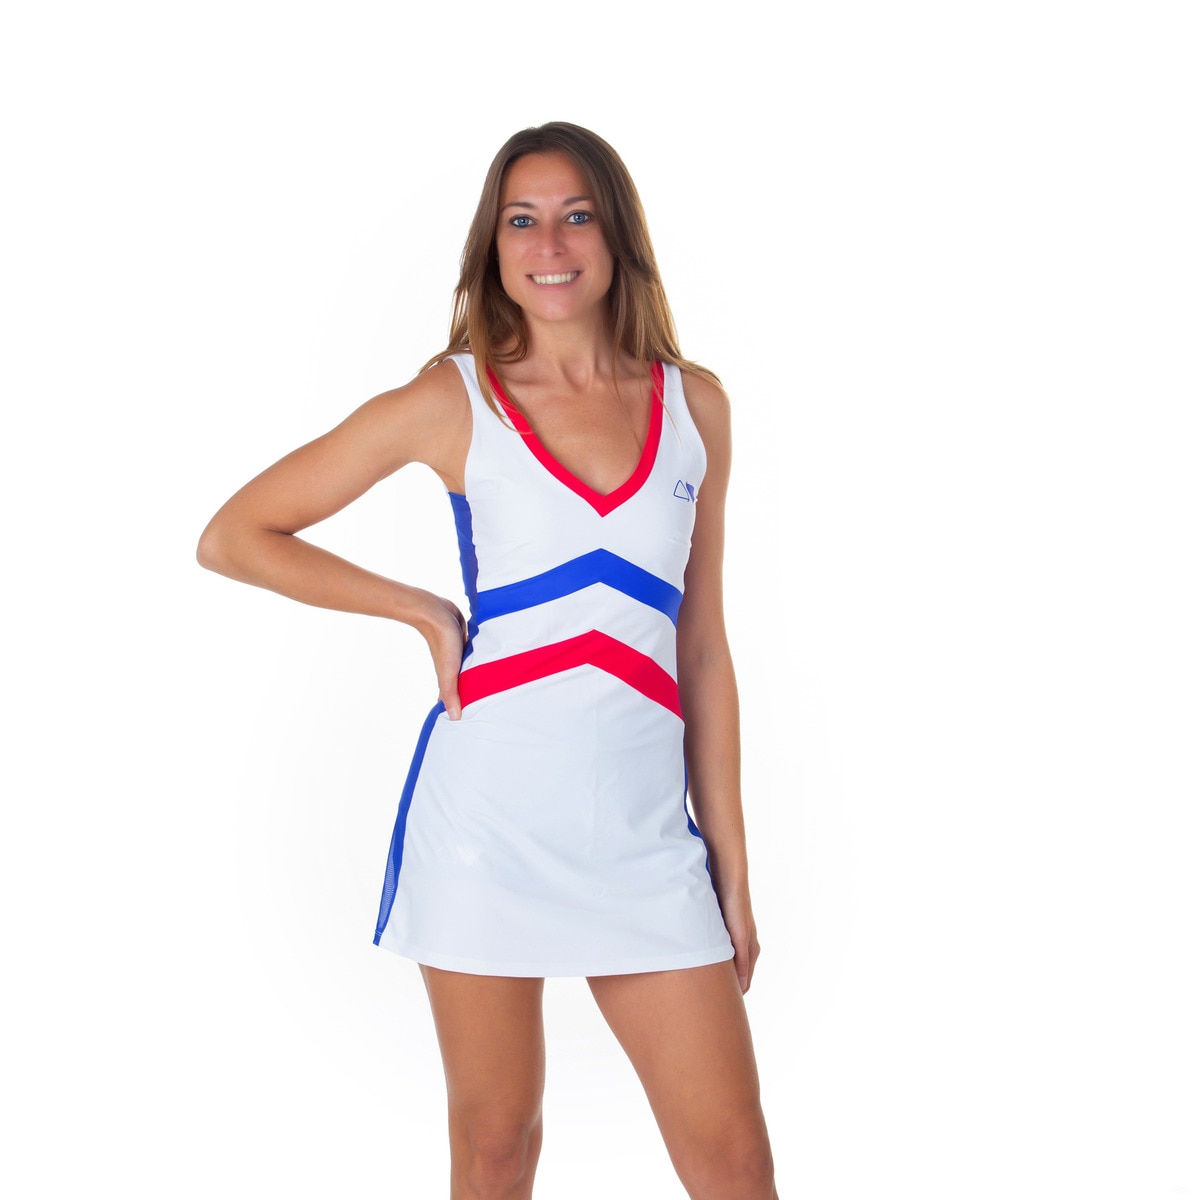 10 vestidos deportivos para apuntarte a la tendencia de entrenar con falda  | Shopping | S Moda EL PAÍS